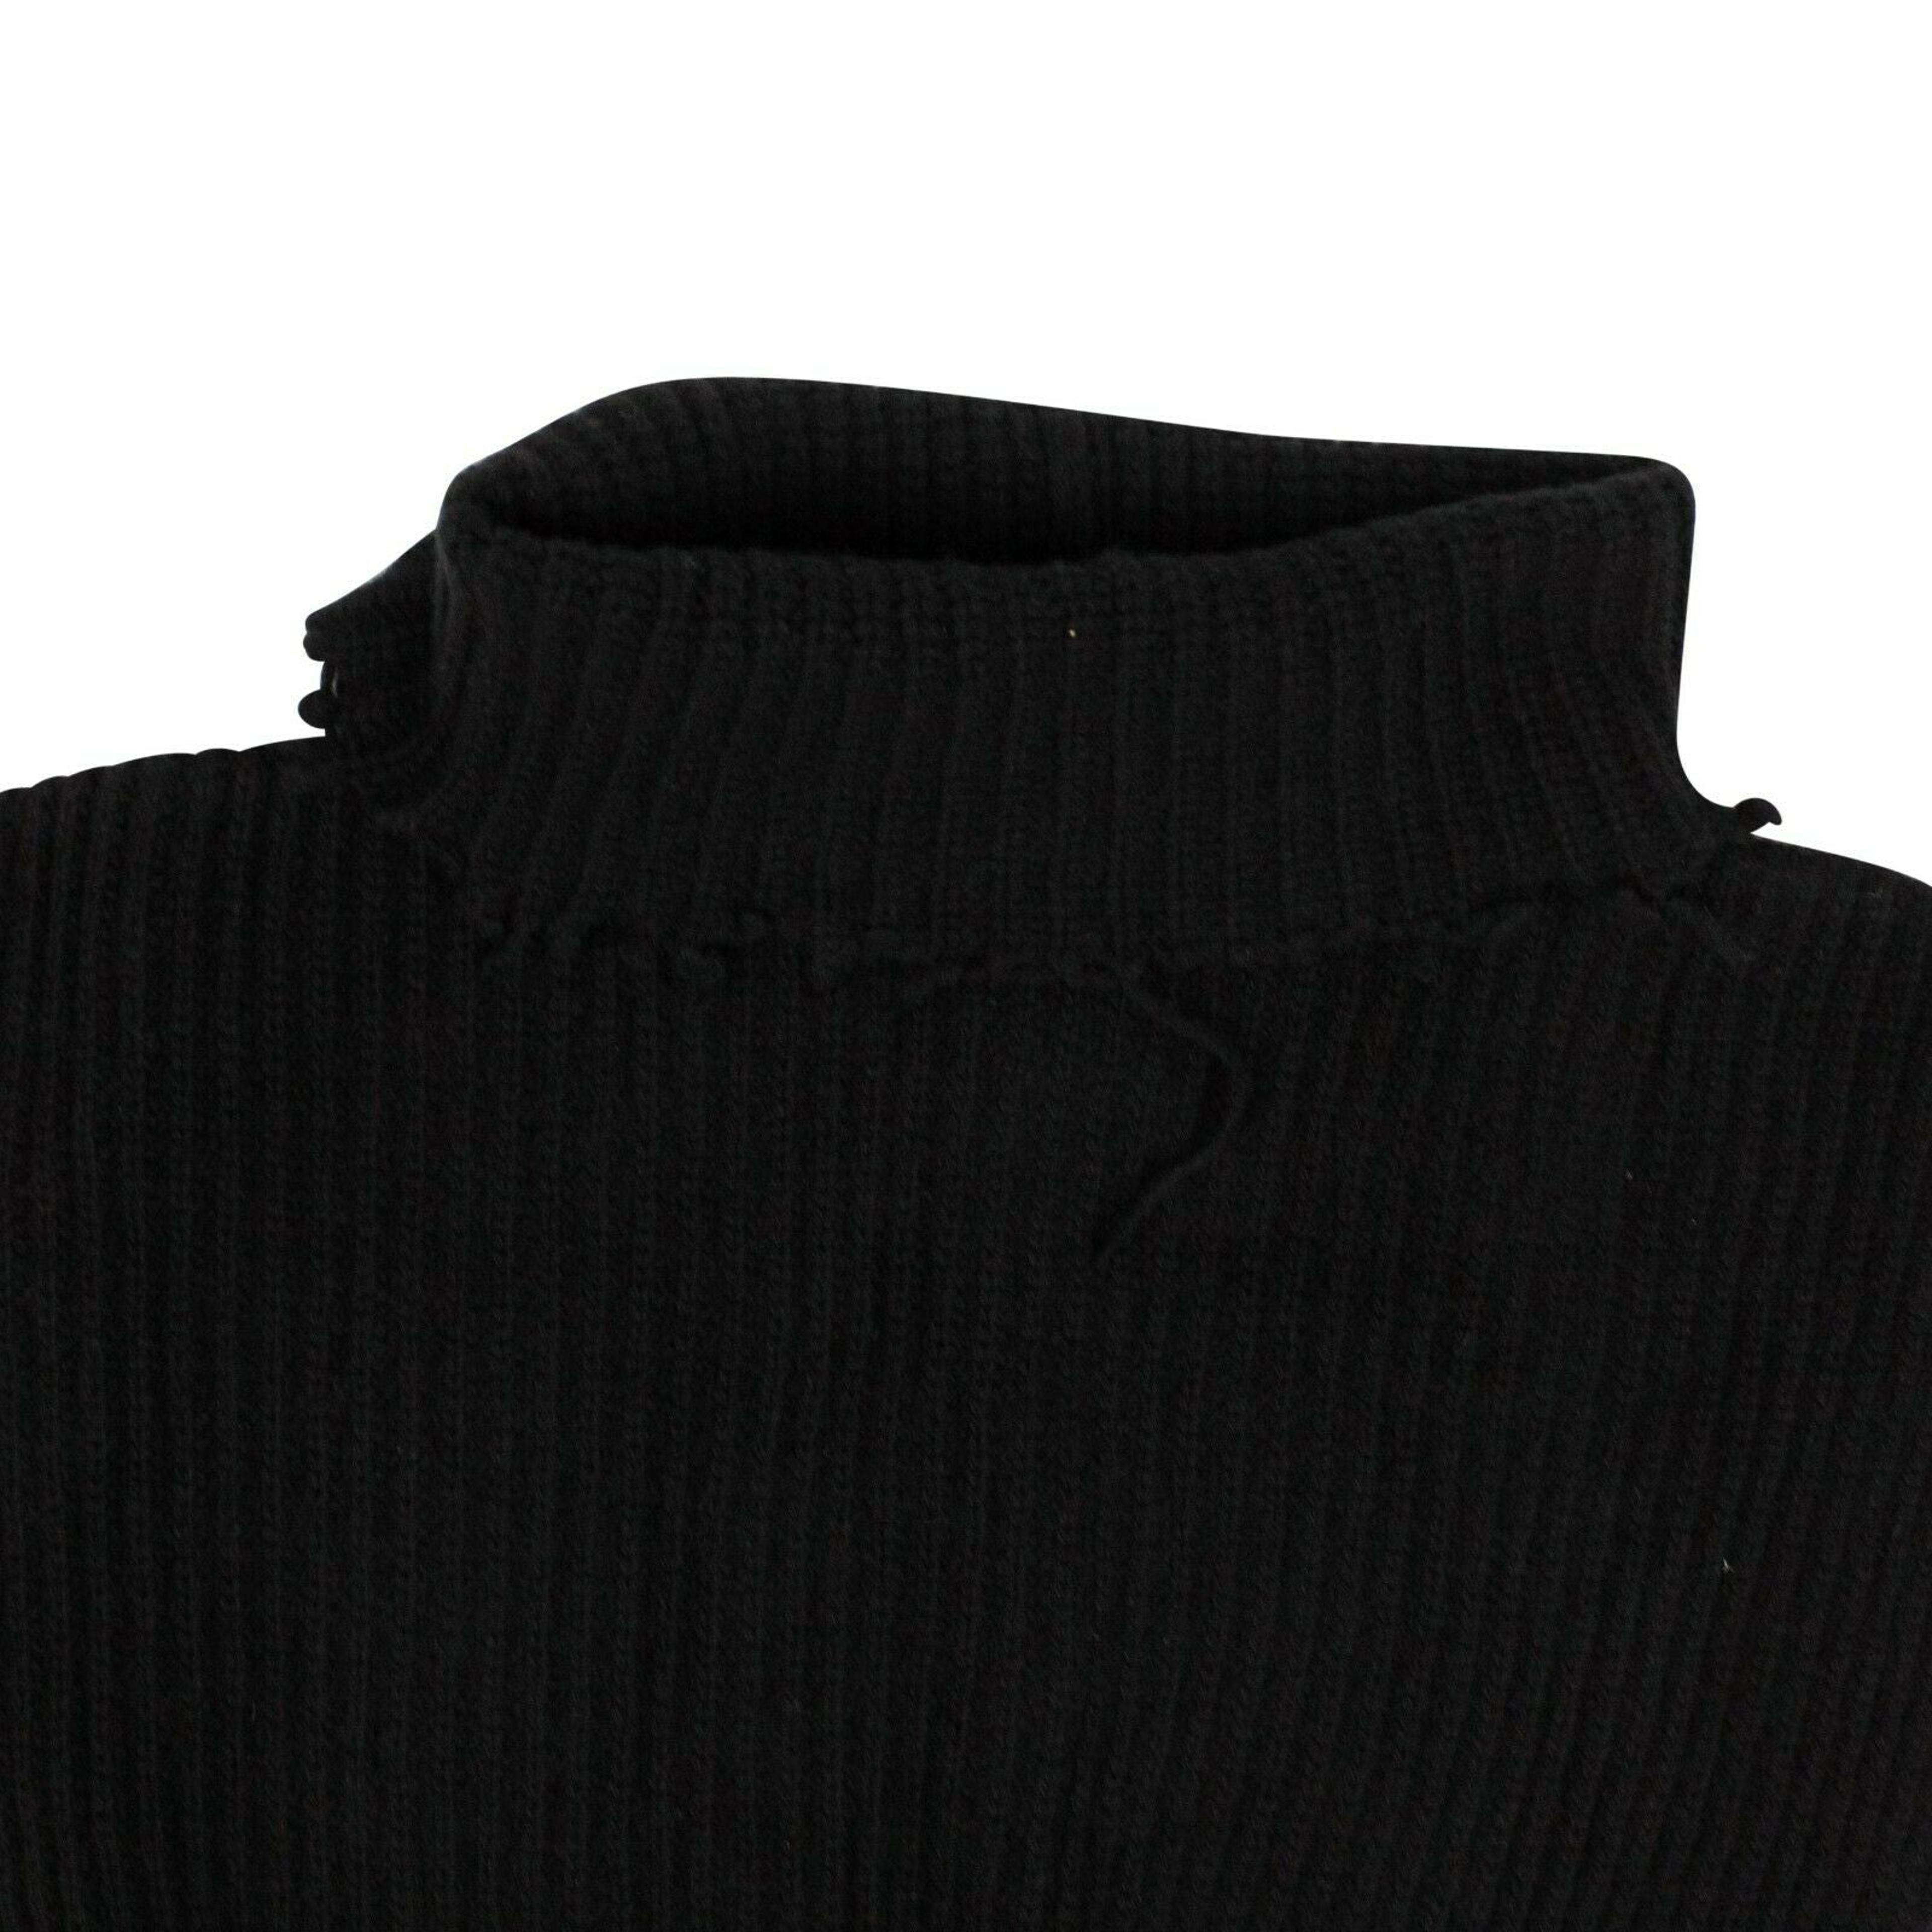 Alternate View 2 of Women's Black Wool Roll Neck Asymmetric Sweater